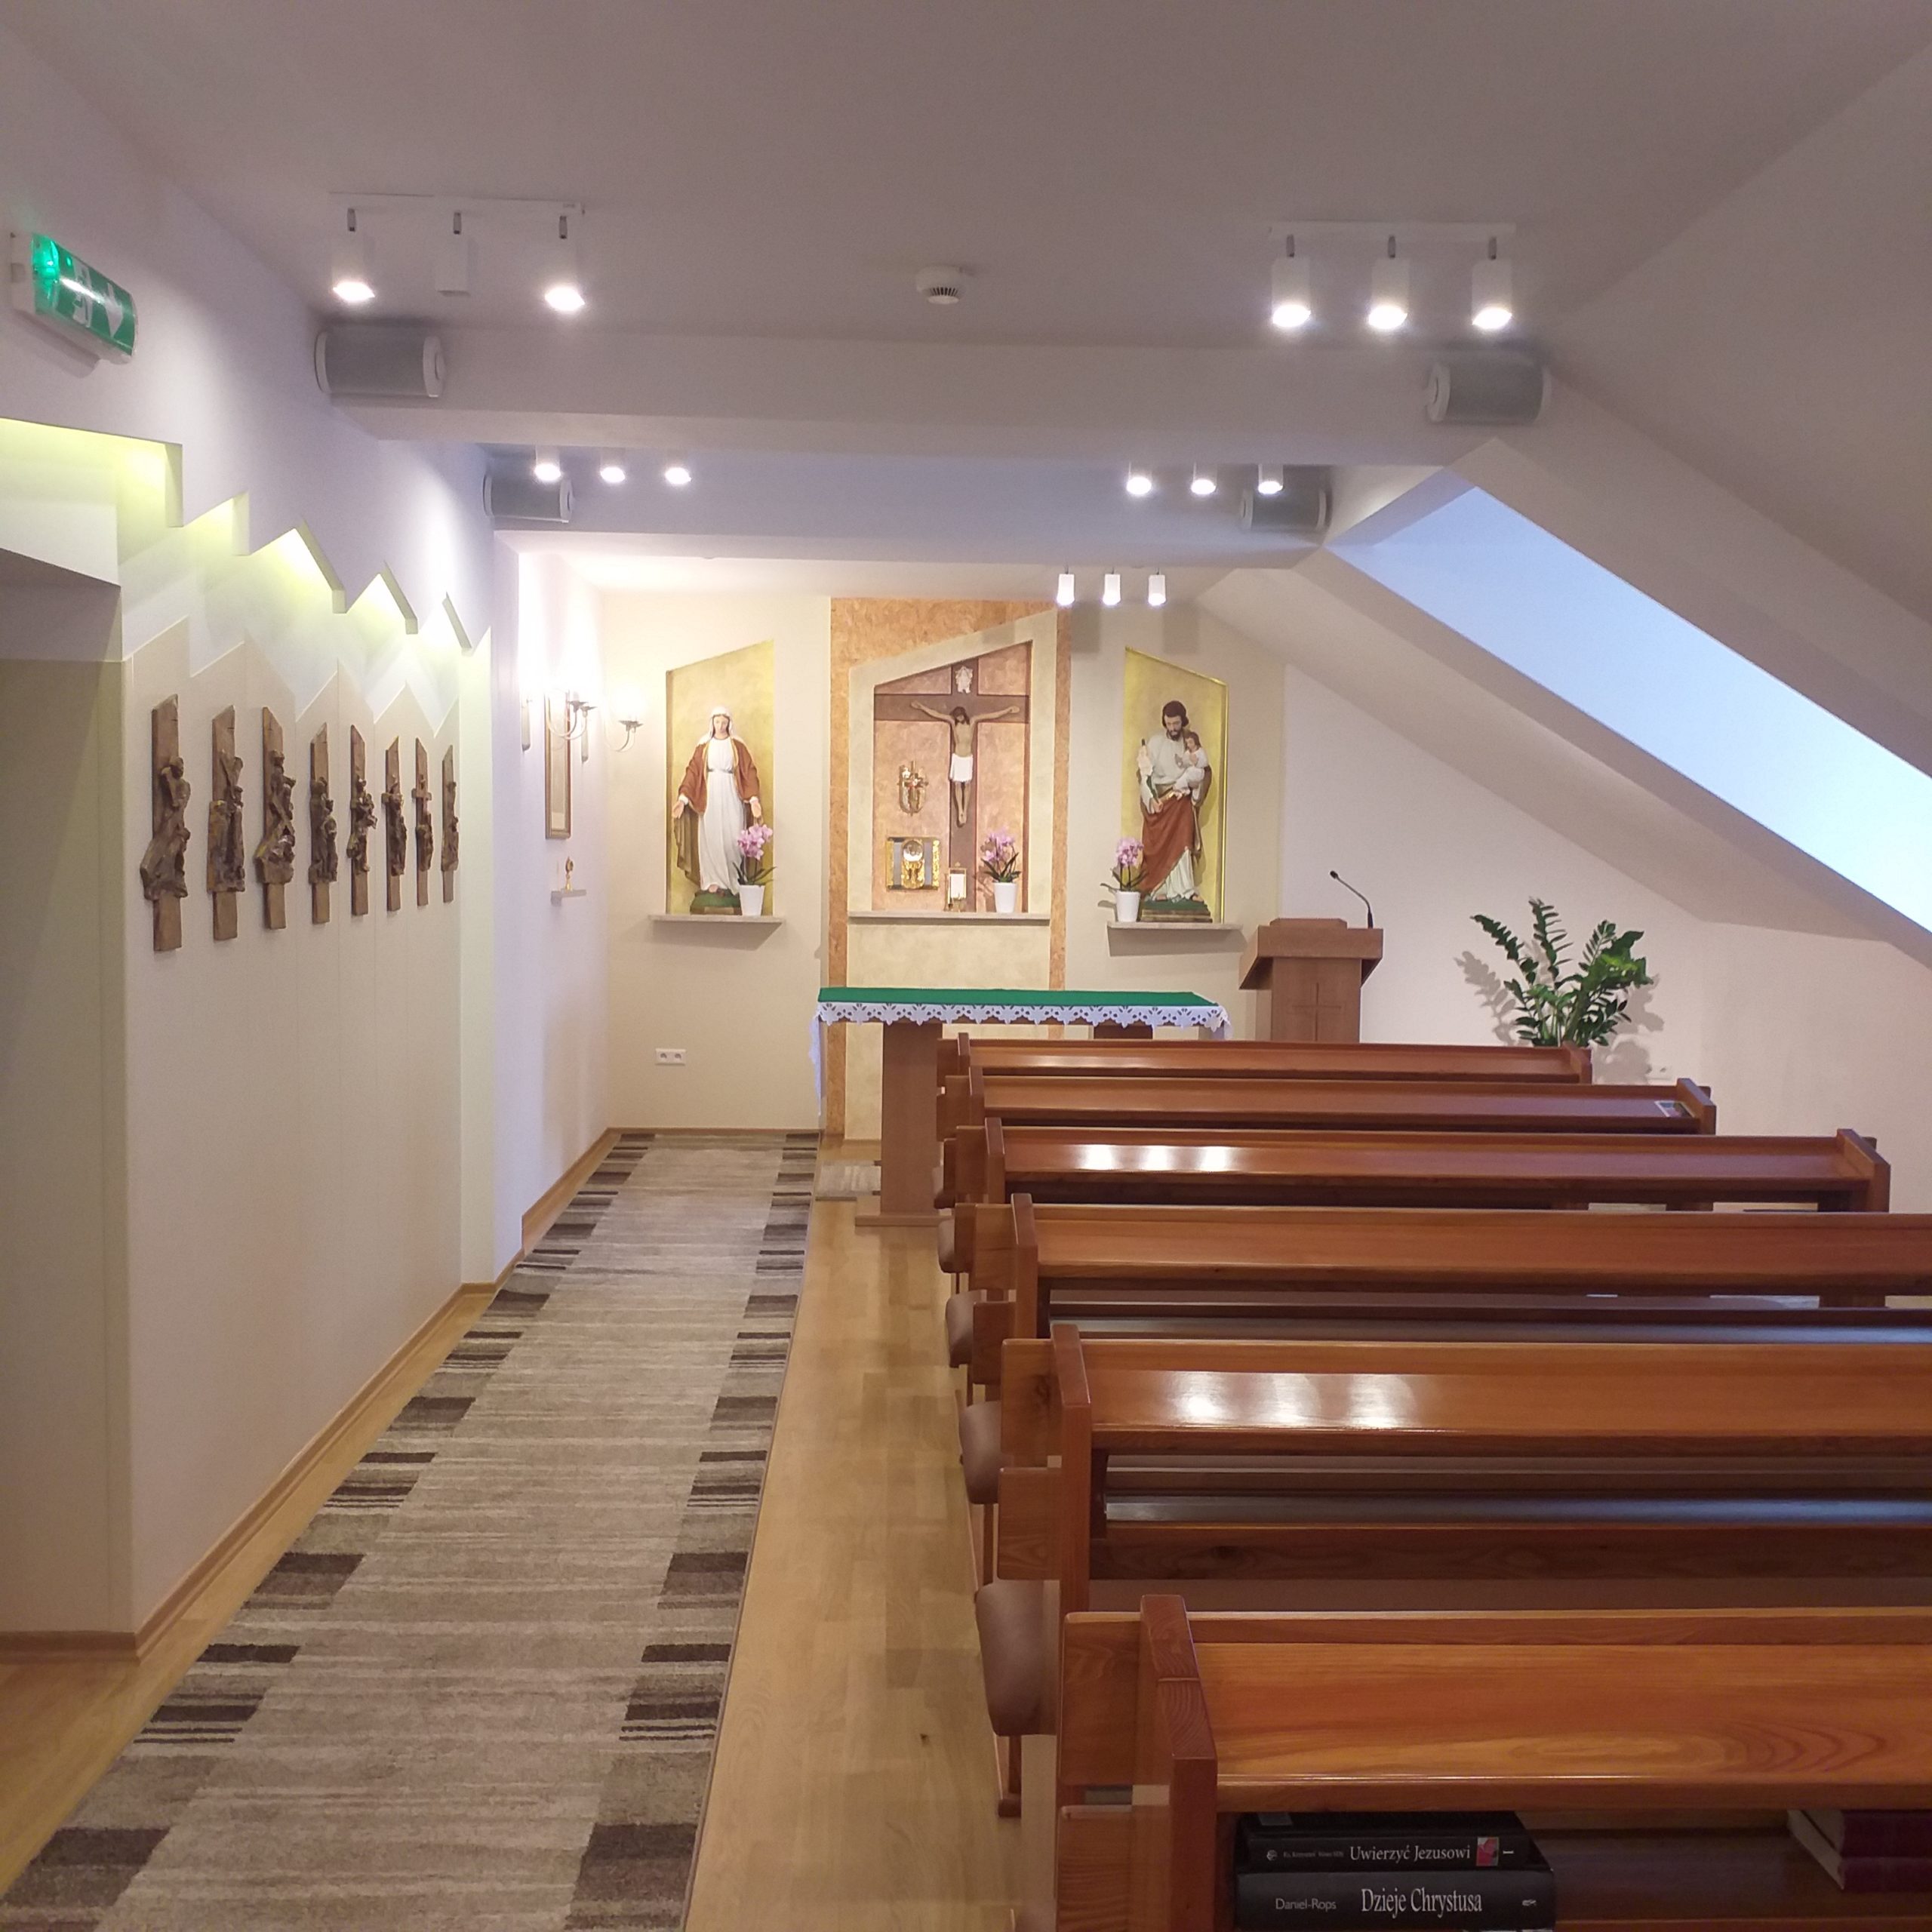 Zdjęcie kaplicy wewnątrz. Po prawej stronie rzędy drewnianych ławek. Po lewej dywan. Na samym przodzie ołtarz. 